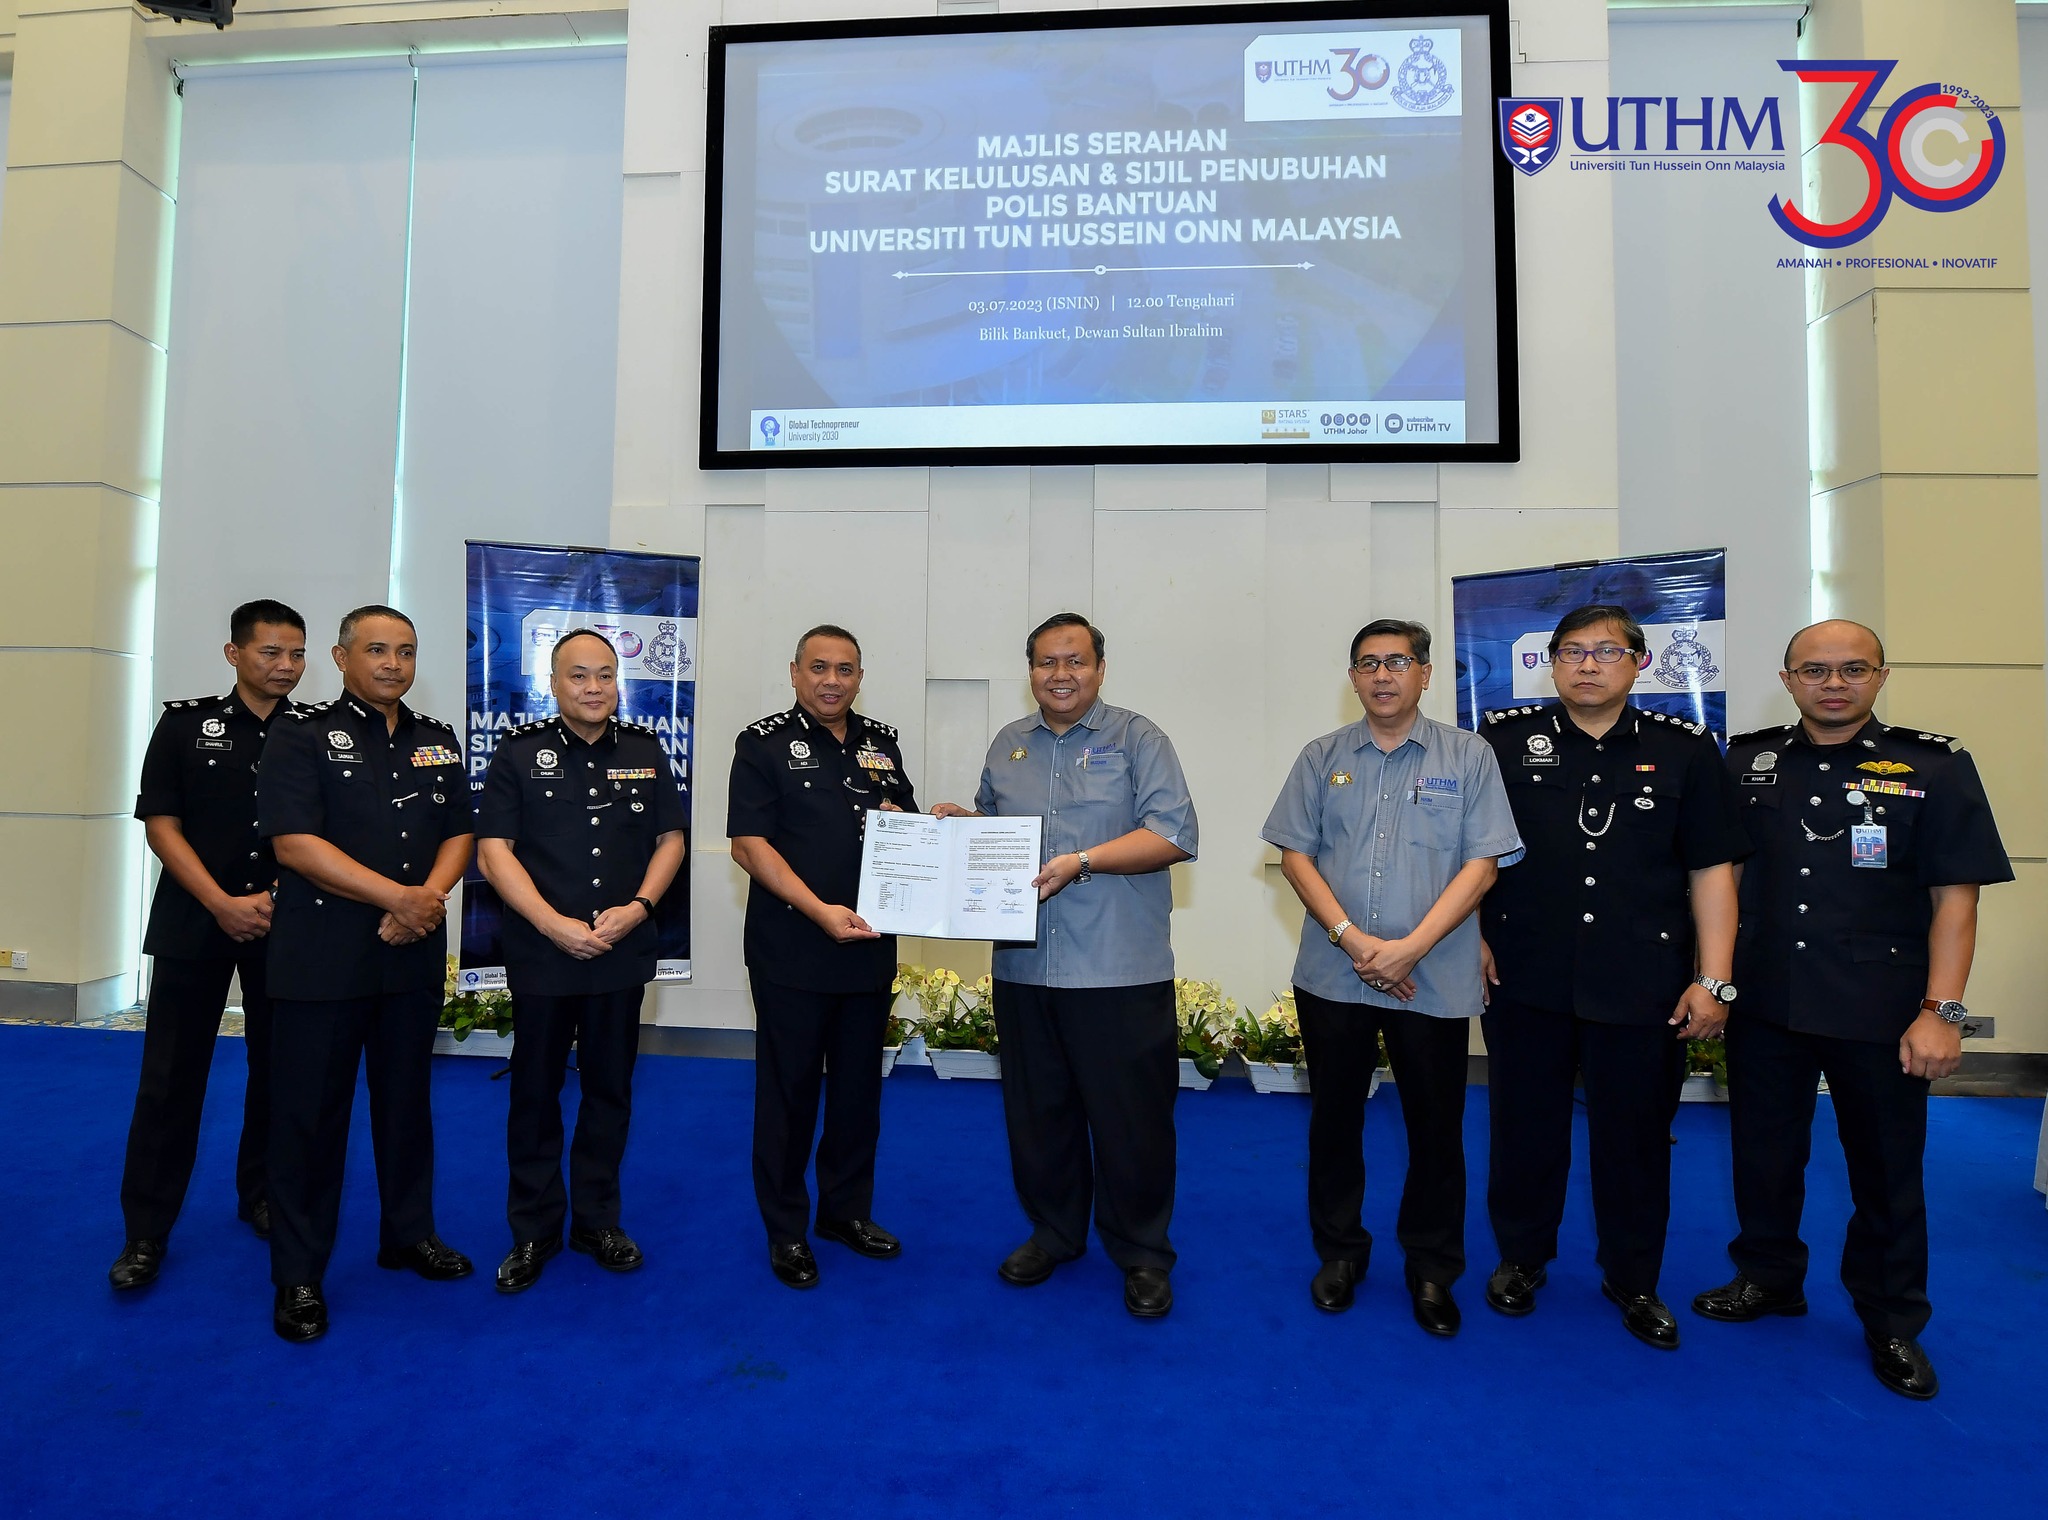 UTHM tubuh skuad Polis Bantuan, terima sijil penubuhan daripada PDRM